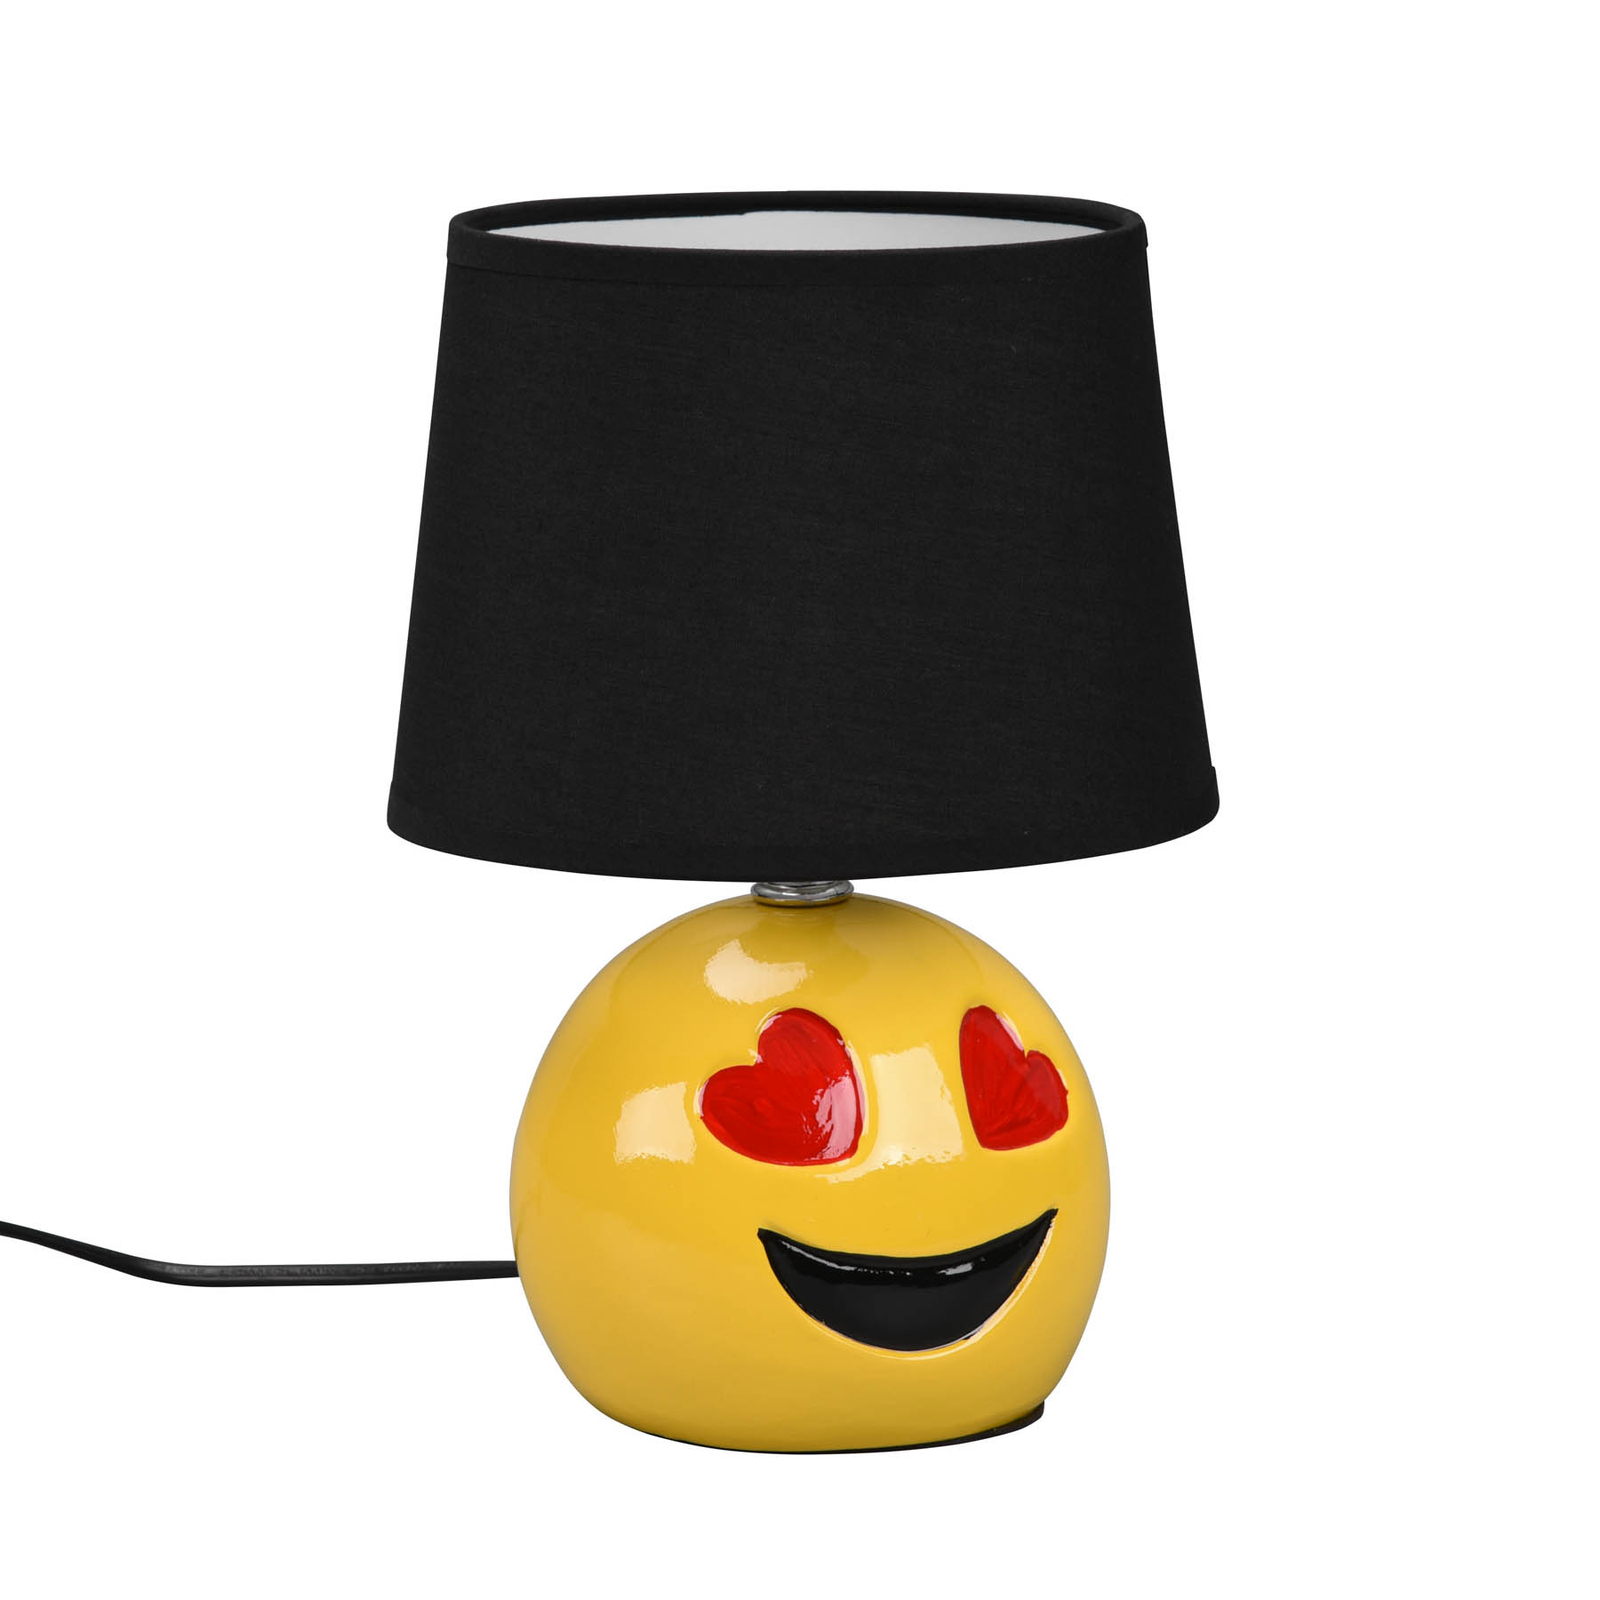 Lovely bordlampe med smiley, sort stofskærm